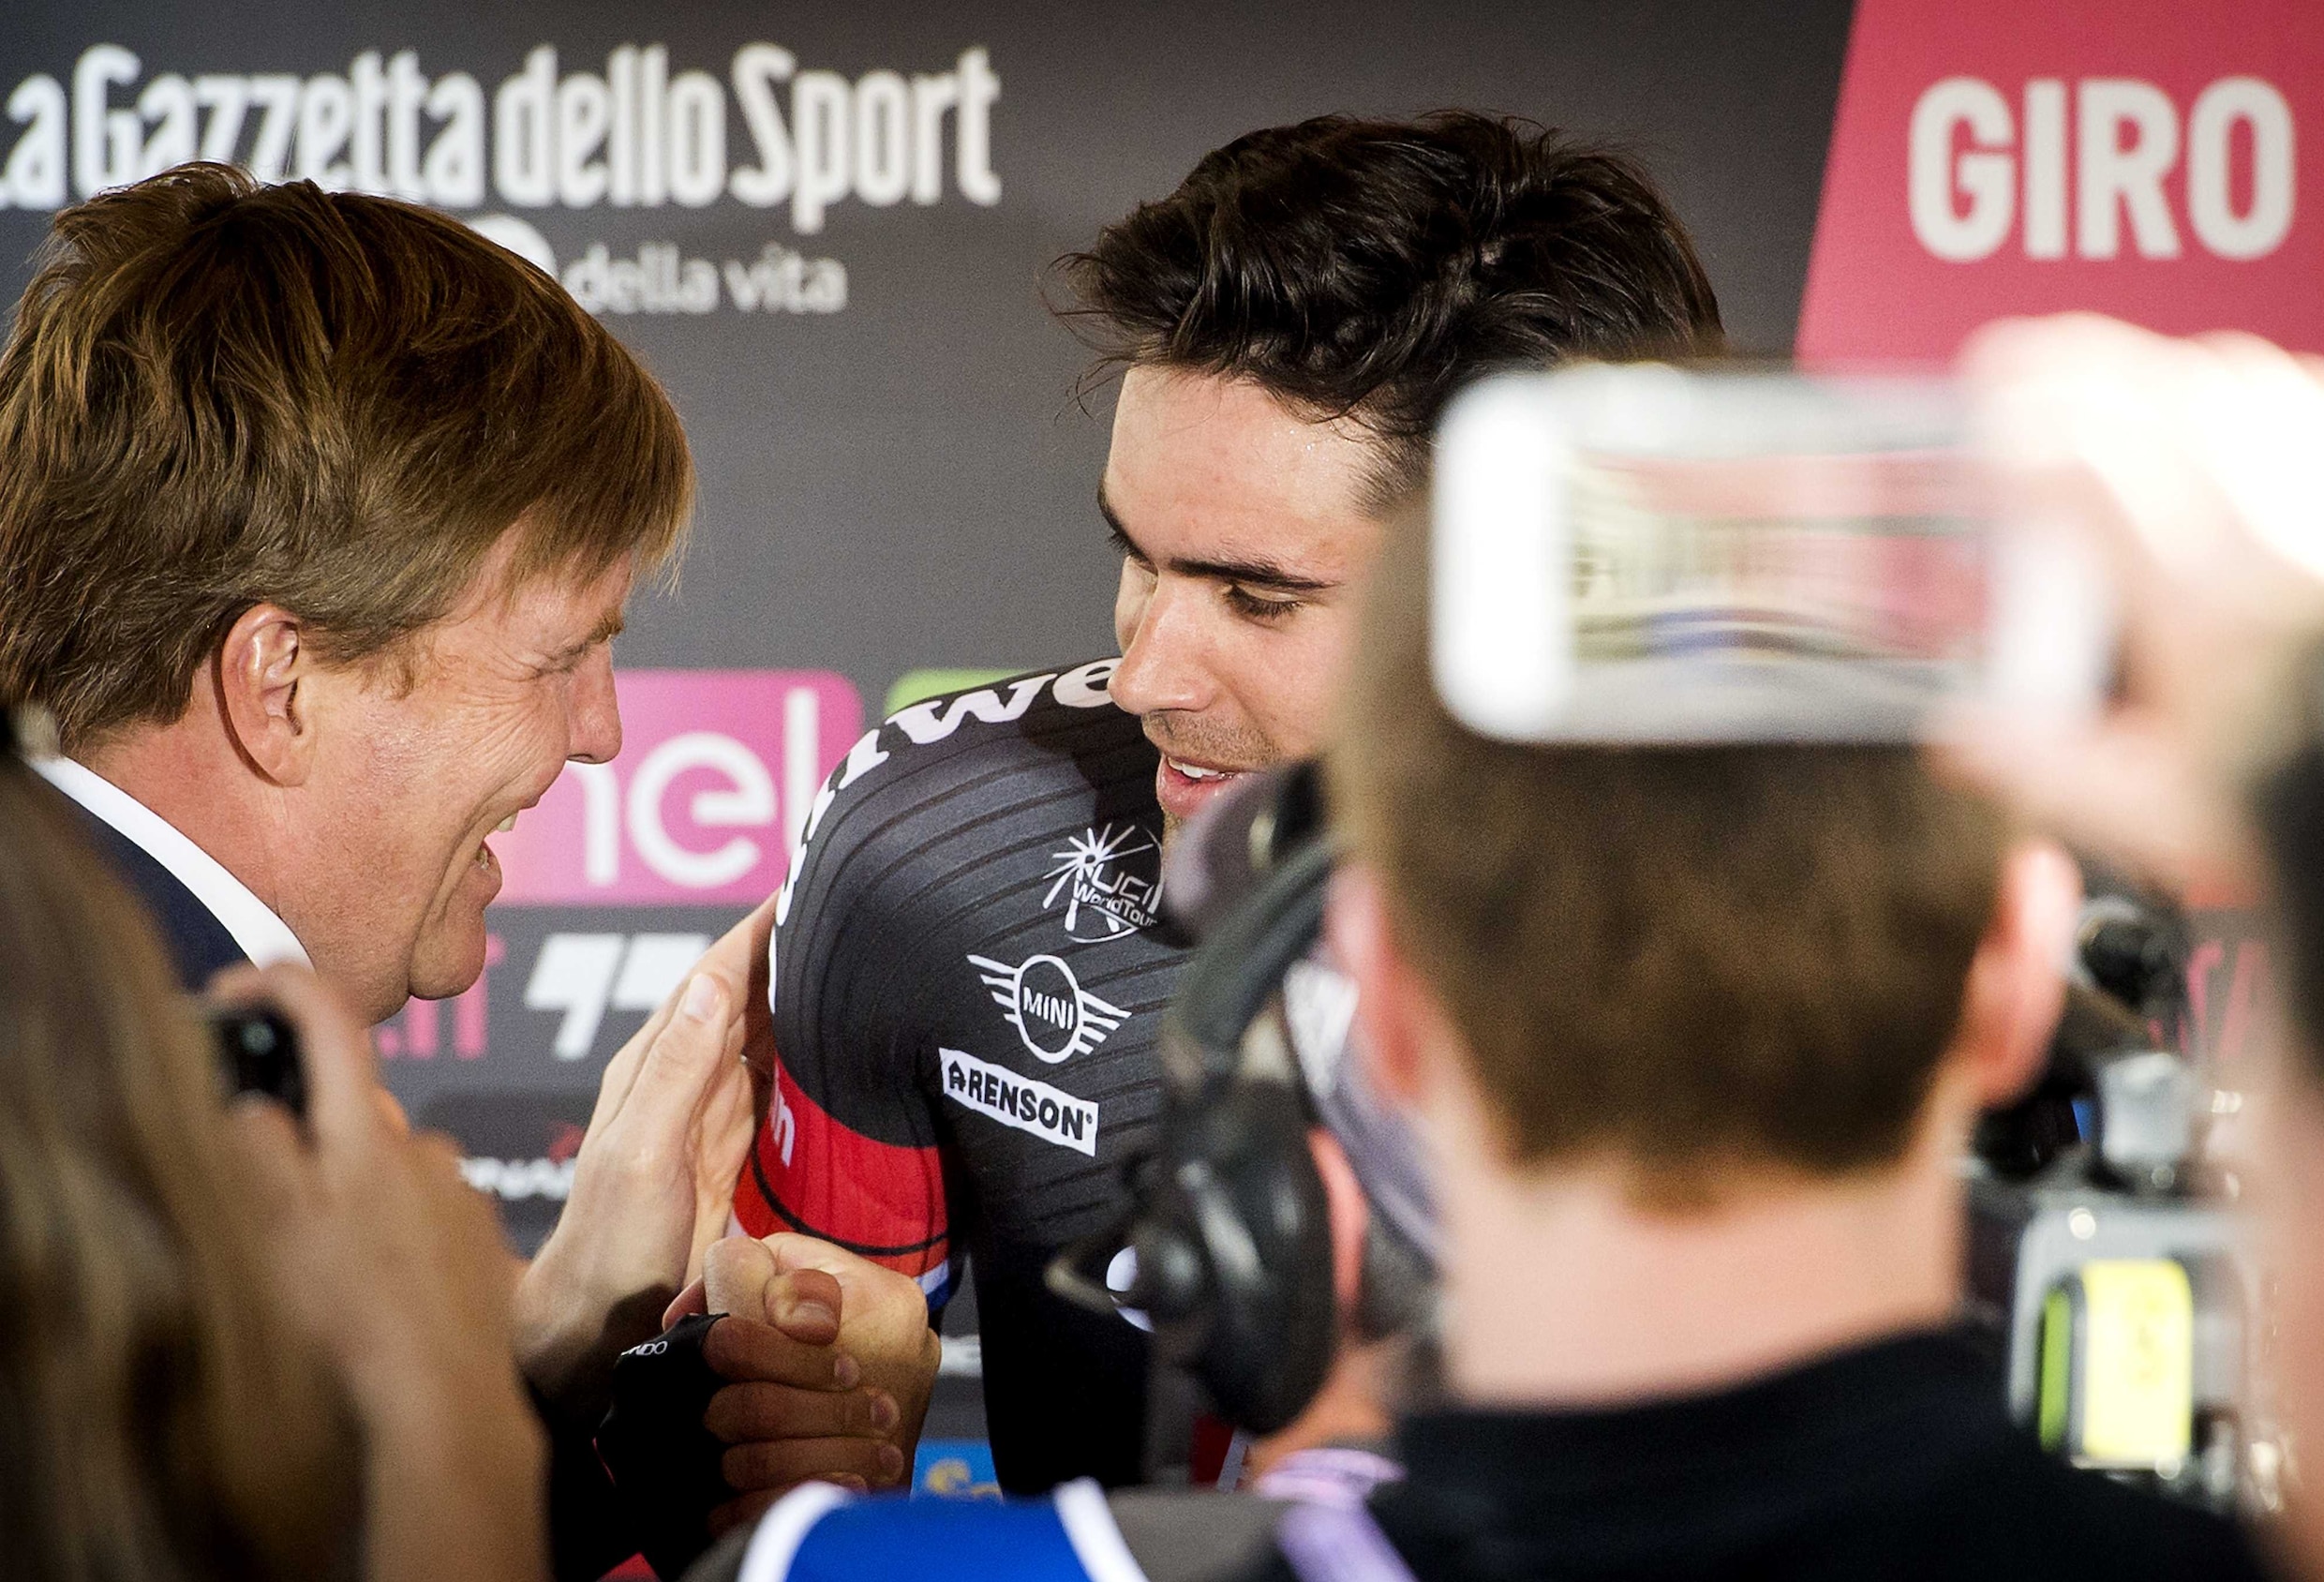 Spannende ontknoping in Giro niet gezond: "Ik voel mij misselijk"